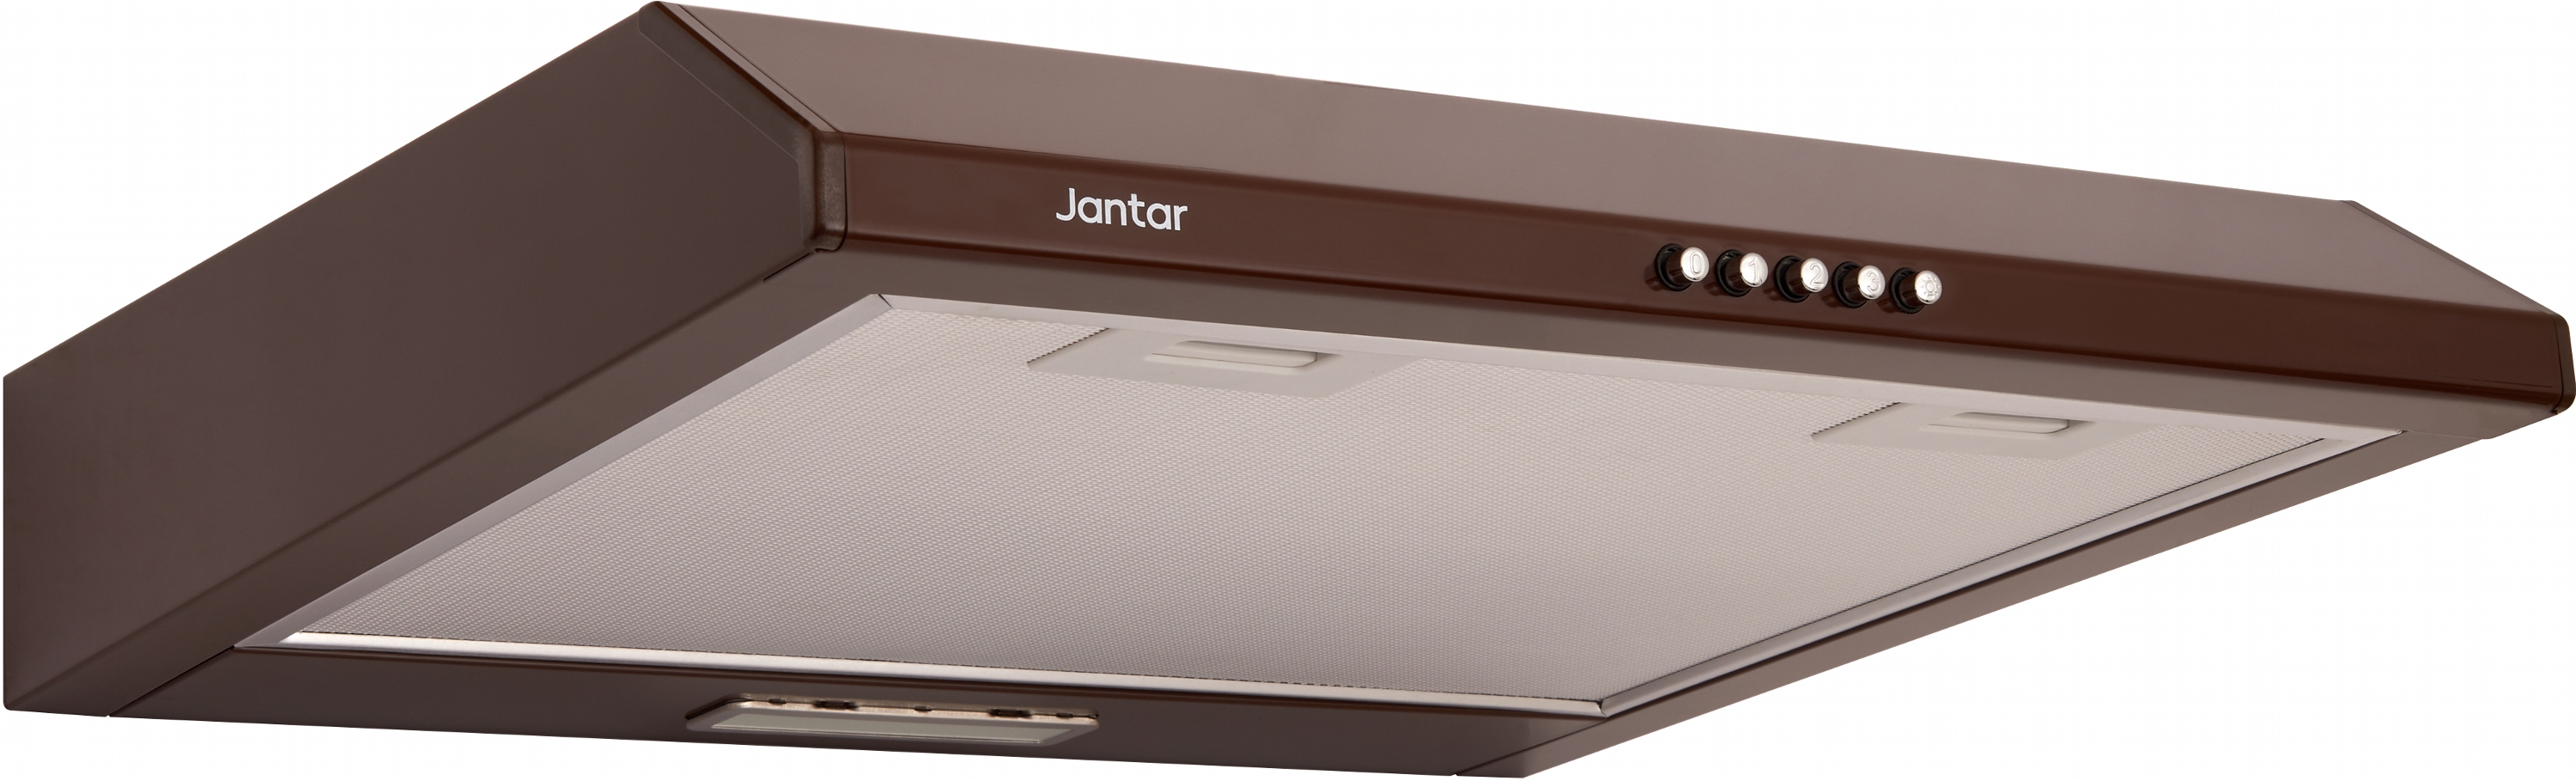 Купить вытяжка jantar с отводом воздуха Jantar ST I LED 60 BR в Киеве